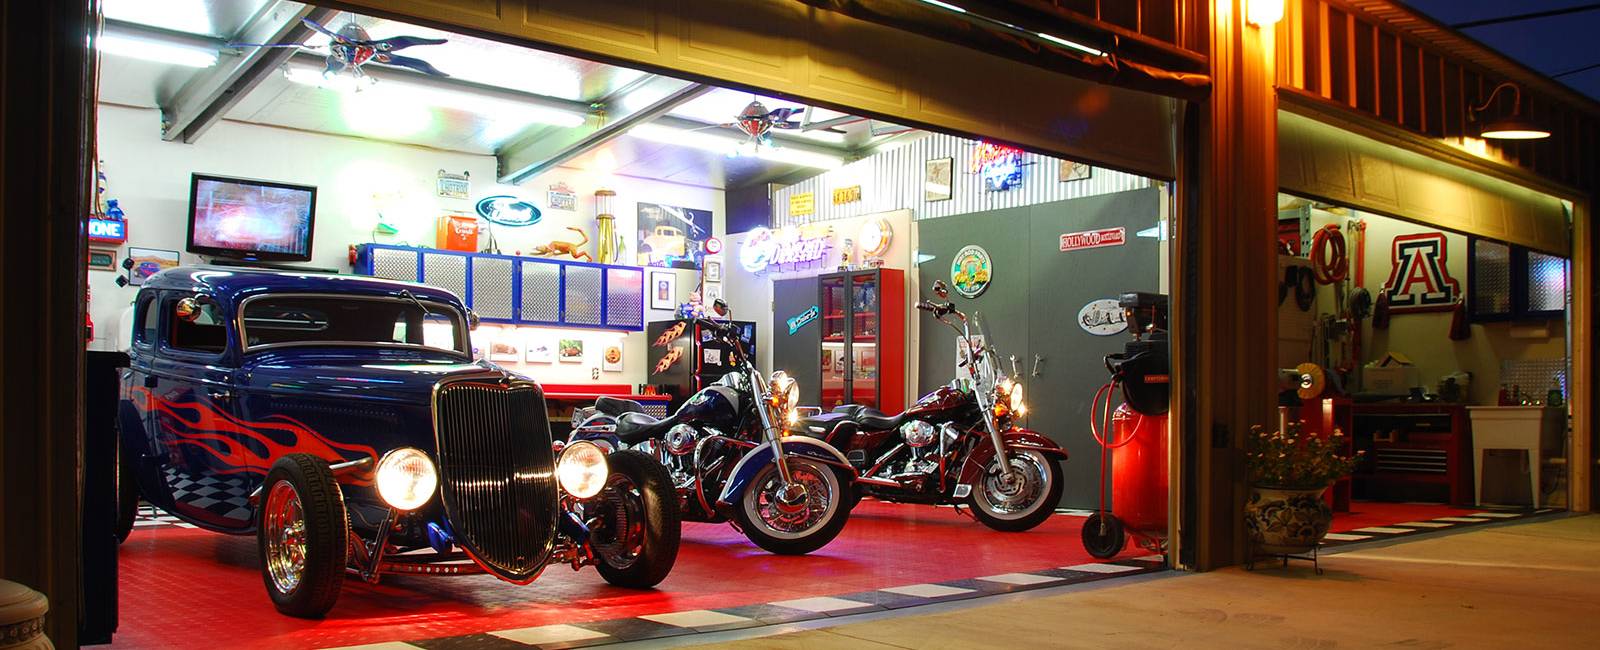 Vintage Car and a Harley Davidson Parked on a RaceDeck floored Home Garage